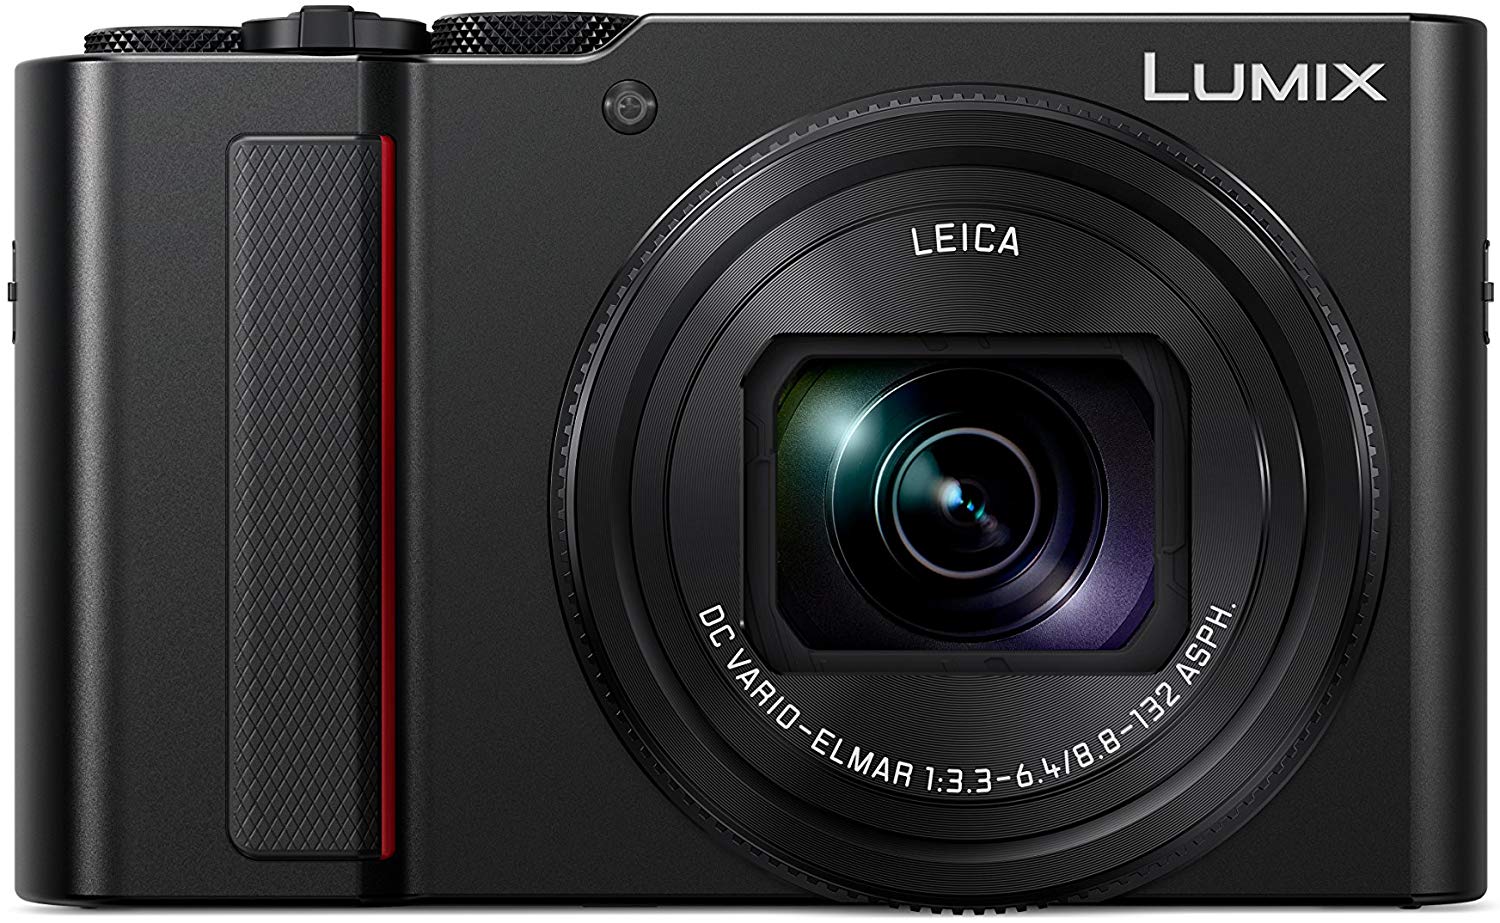 the amazing panasonic lumix zs200 travel camera